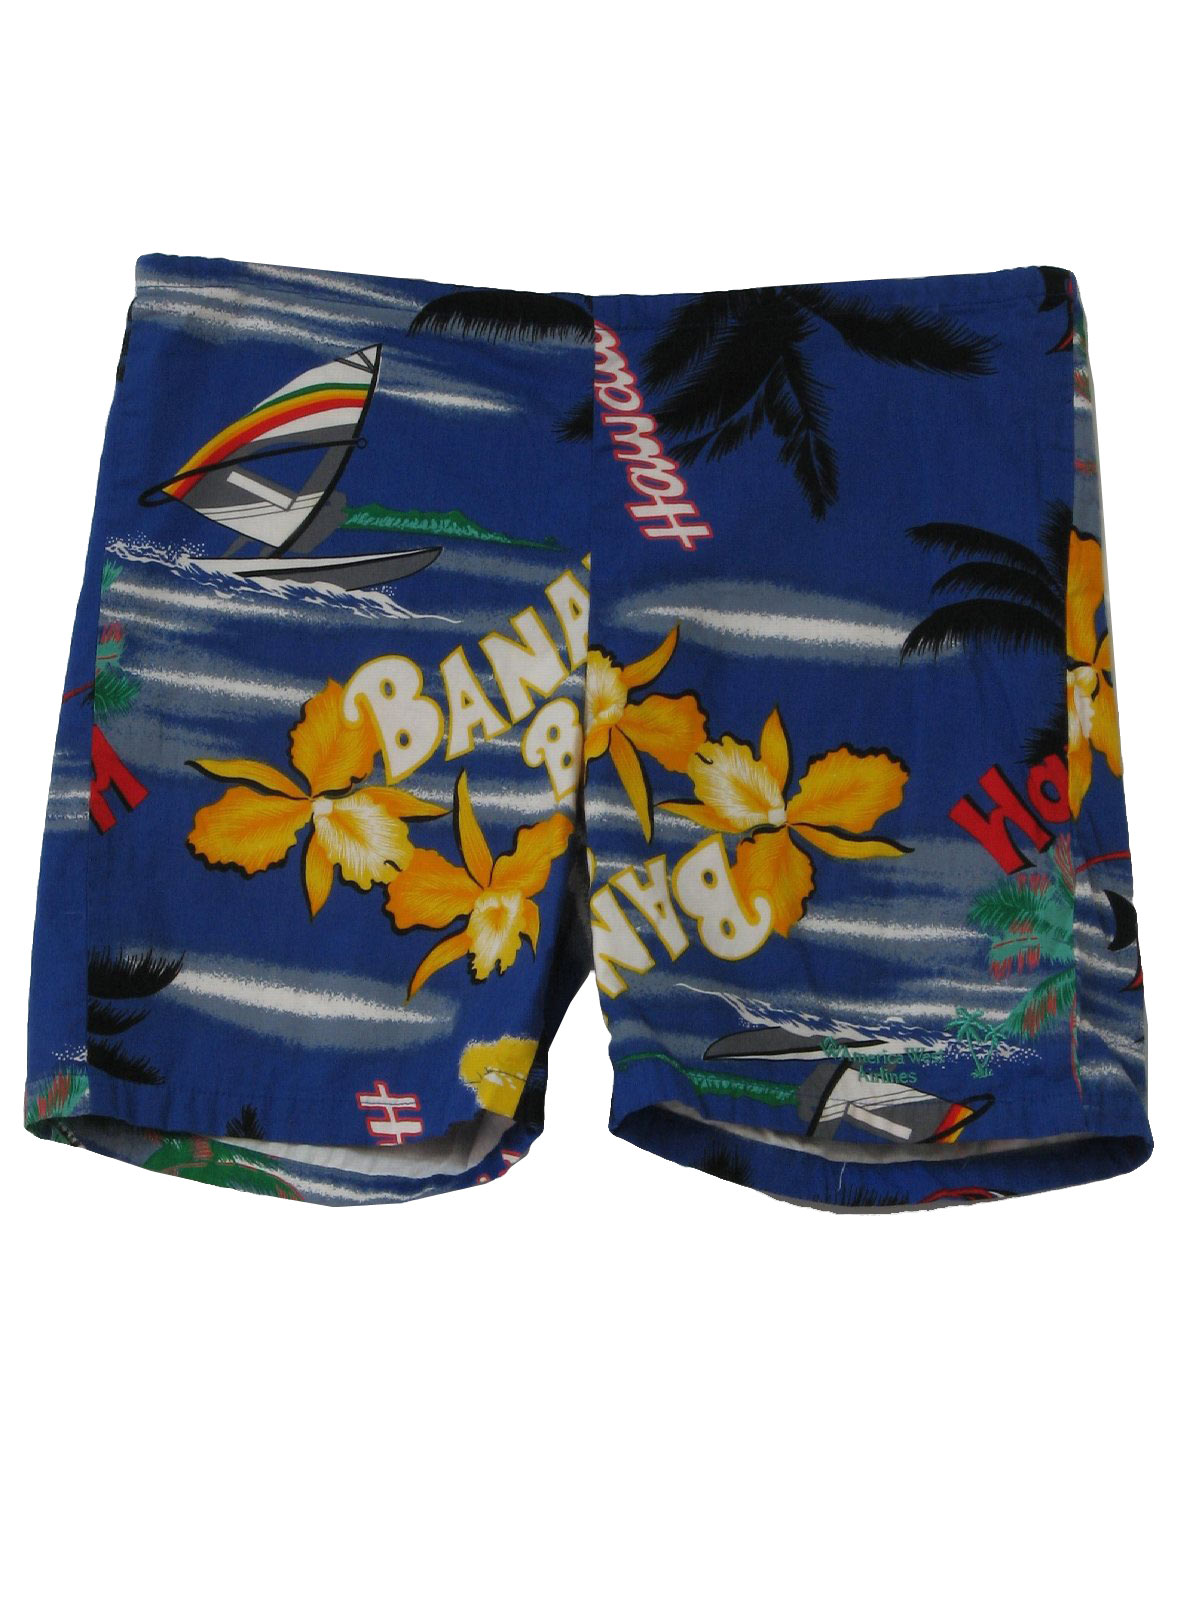 1990's Retro Shorts: 90s -Banana Bay Hawaii- Mens shaded blue